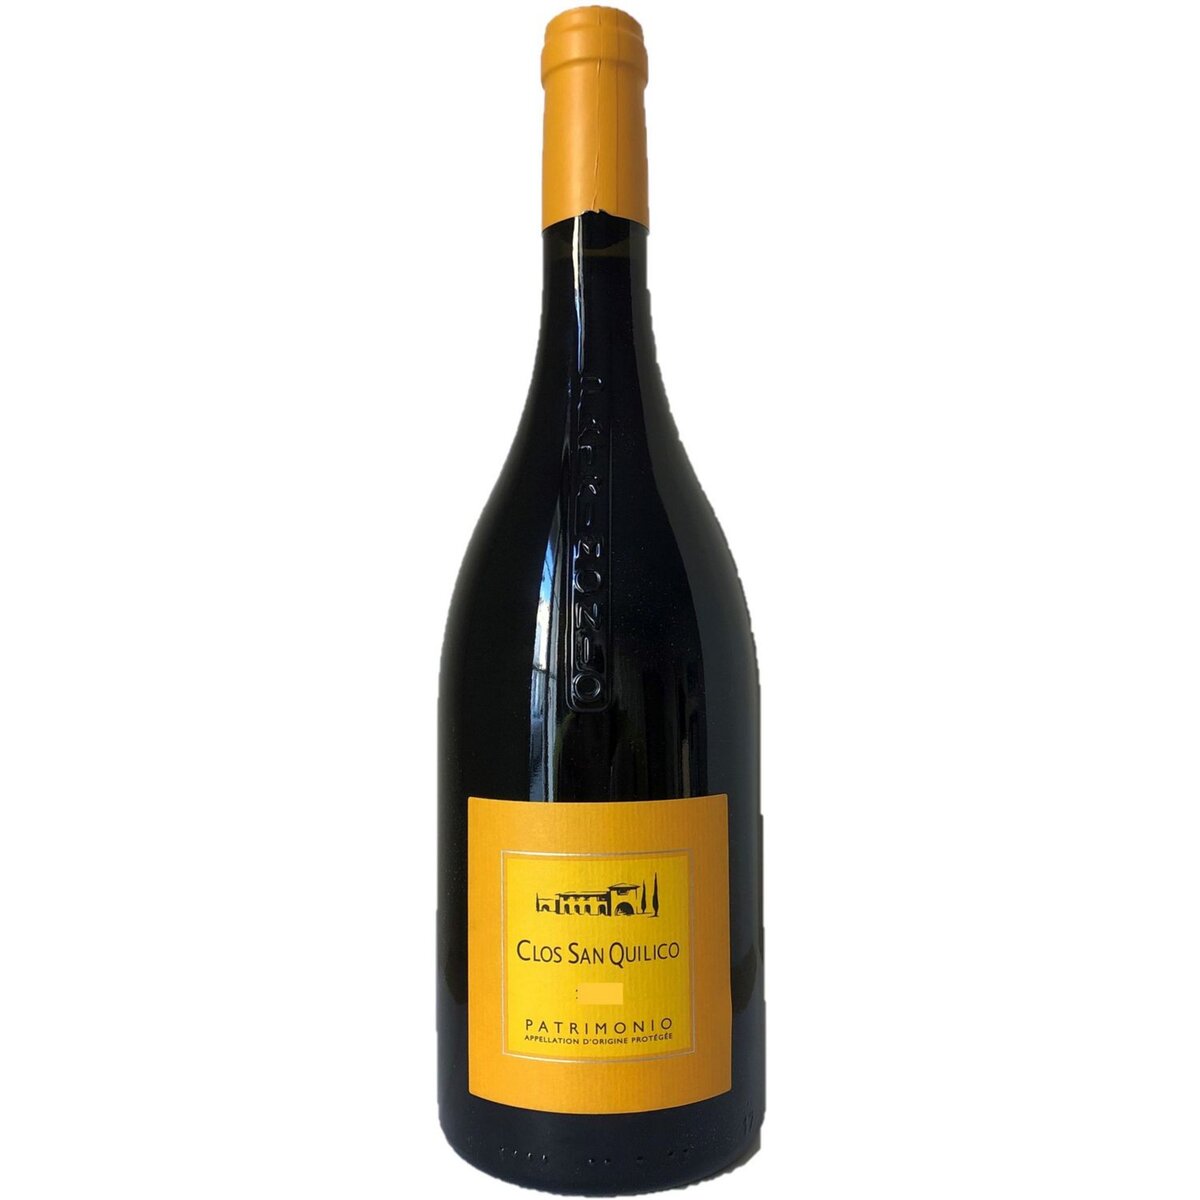 Vin rouge Clos San Quilico corse patrimonio vin 12,5% 75cl